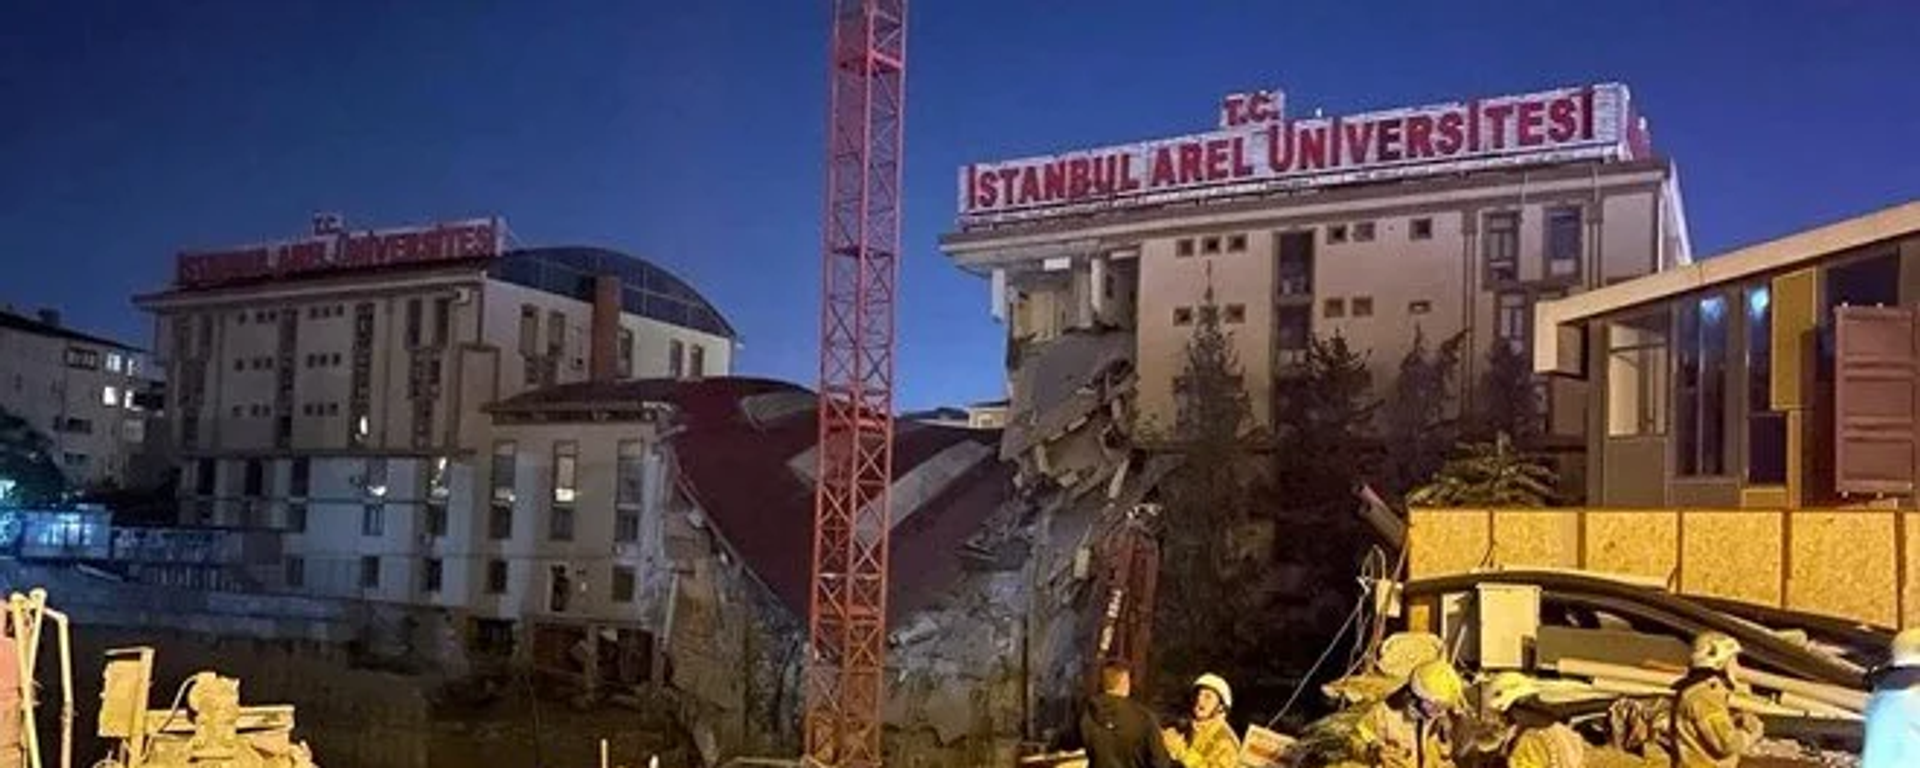 İstanbul Küçükçekmece'de, bir konut şantiyesinin istinat duvarının çökmesi sonucu, bitişiğindeki özel üniversitenin 3 katlı binası da çöktü, üniversitenin ana binasında da büyük hasar oluştu. - Sputnik Türkiye, 1920, 24.10.2022